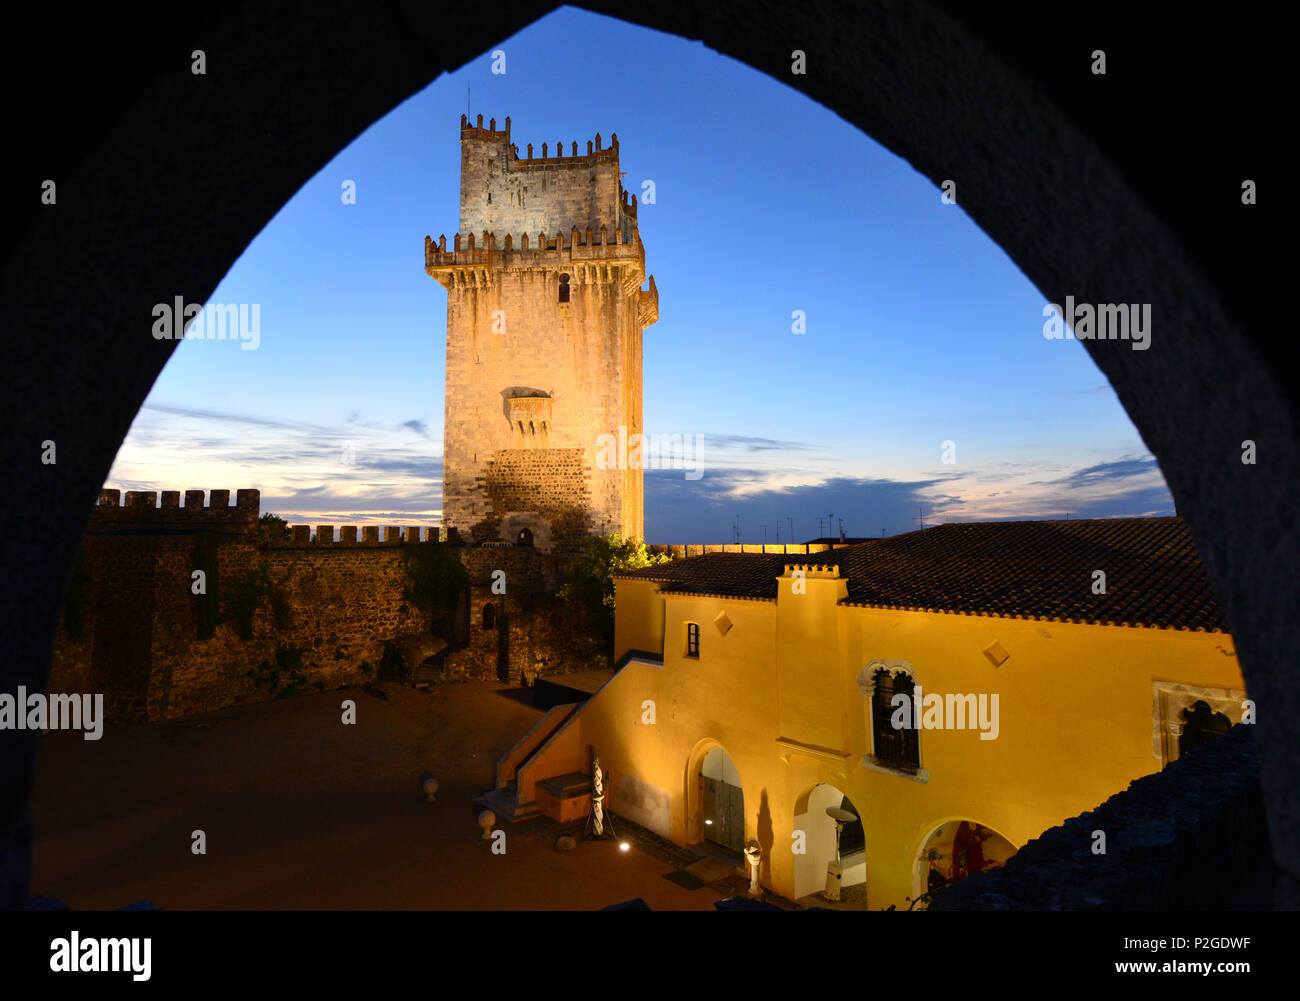 Castelo, Beja, Alentejo, Portugal Stock Photo